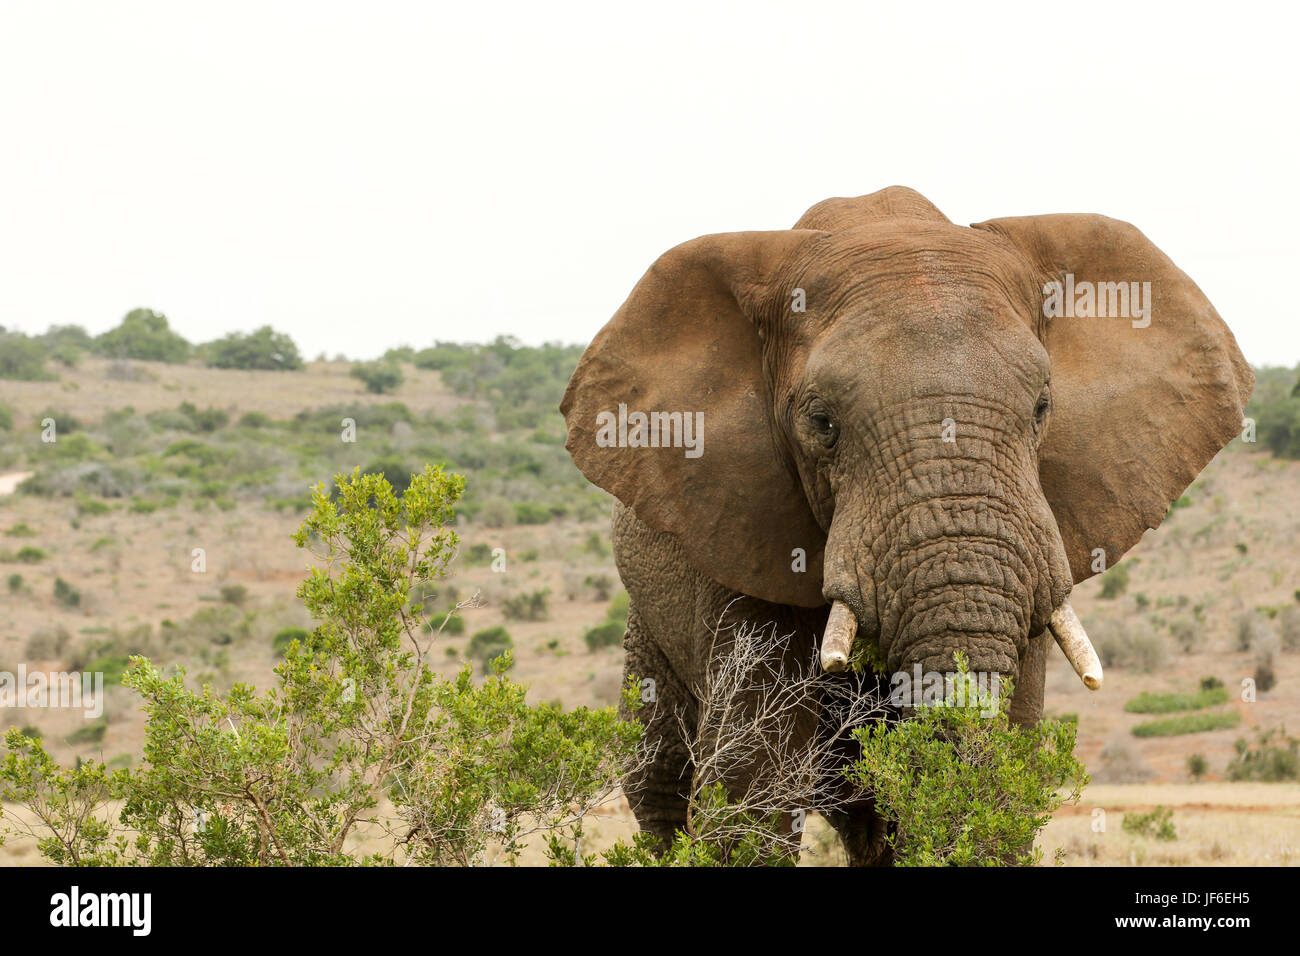 Bush Elephant eating behind the bushes Stock Photo